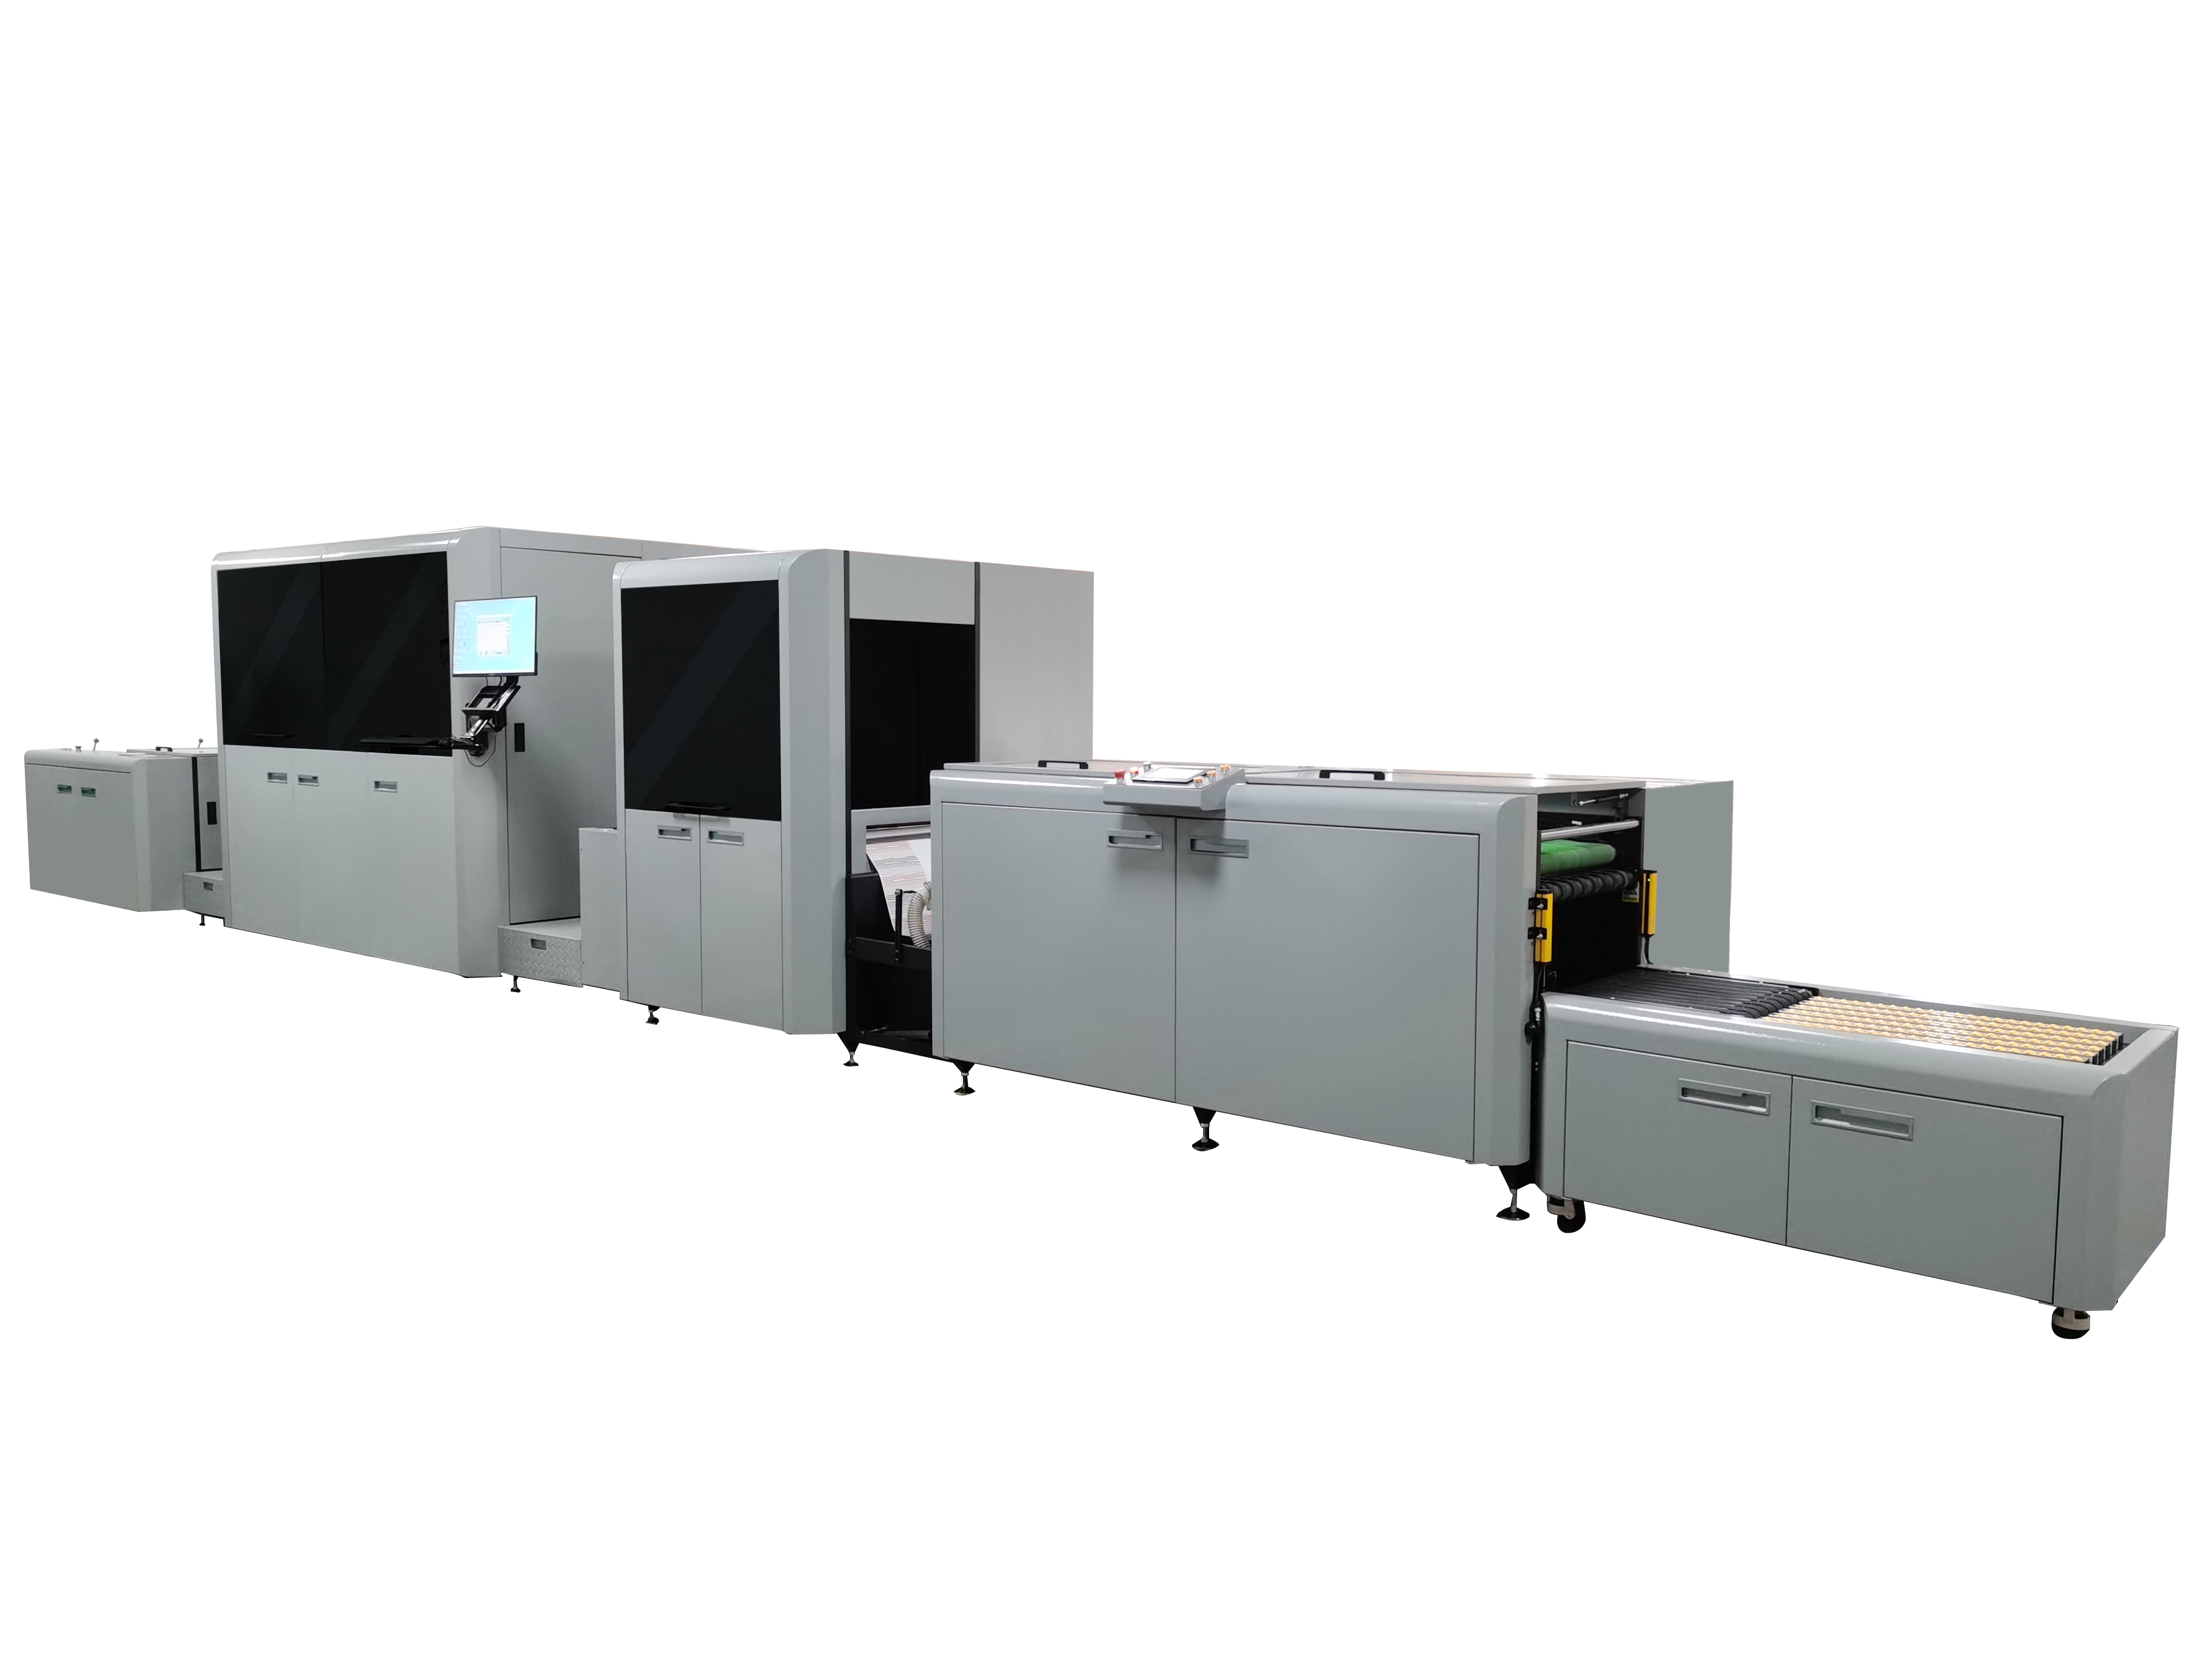 太阳集团tyc5997全新数字印刷解决方案丨新一代双色喷墨轮转数码印刷机DPM440S系列